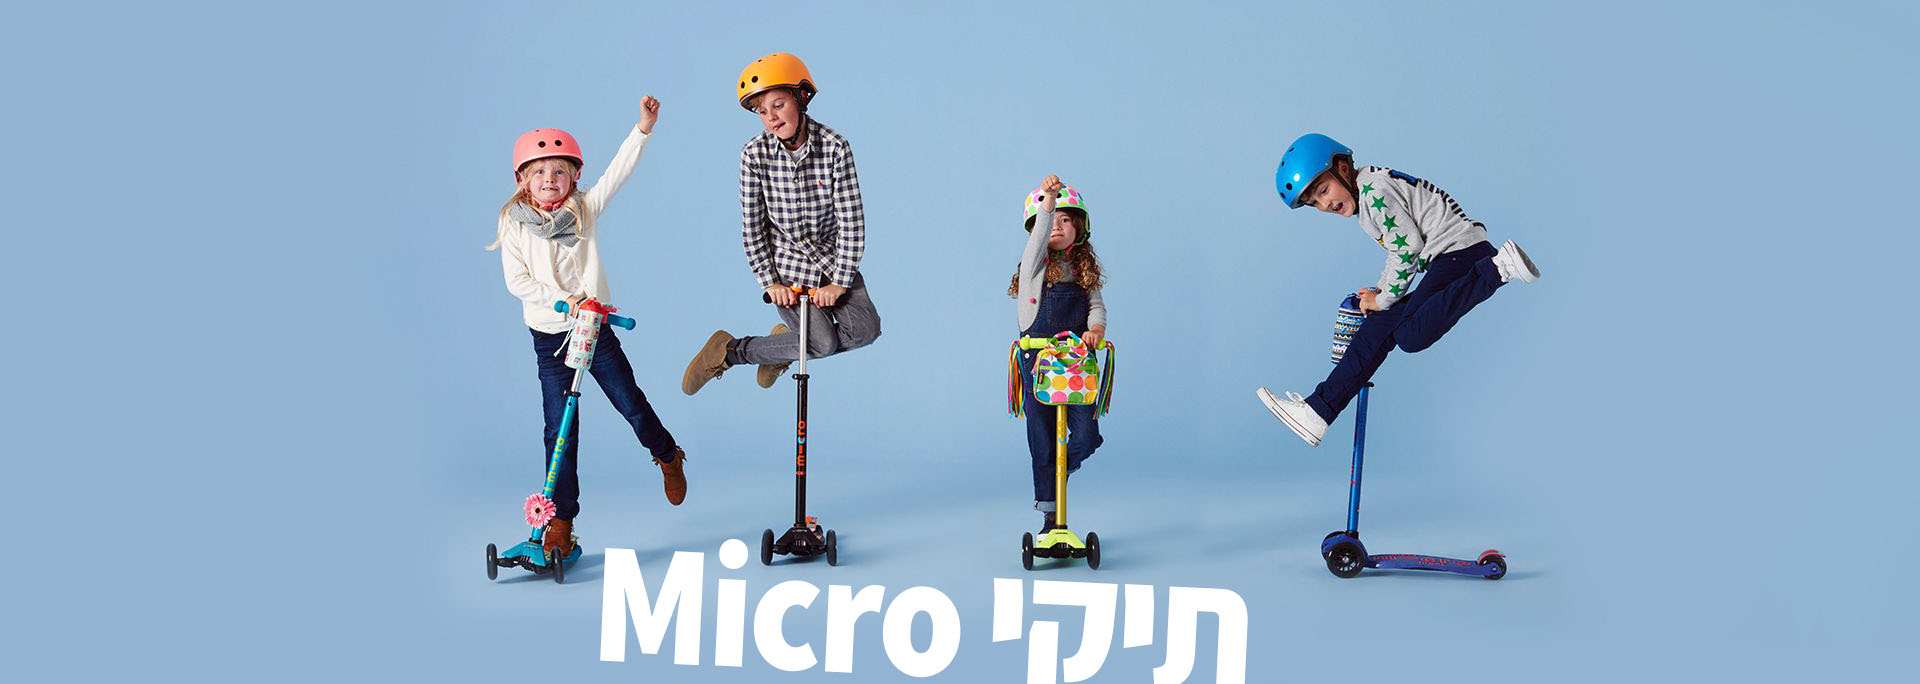 תיקי מיקרו - תיקים לרכיבה על אופניים וקורקינטים לילדים